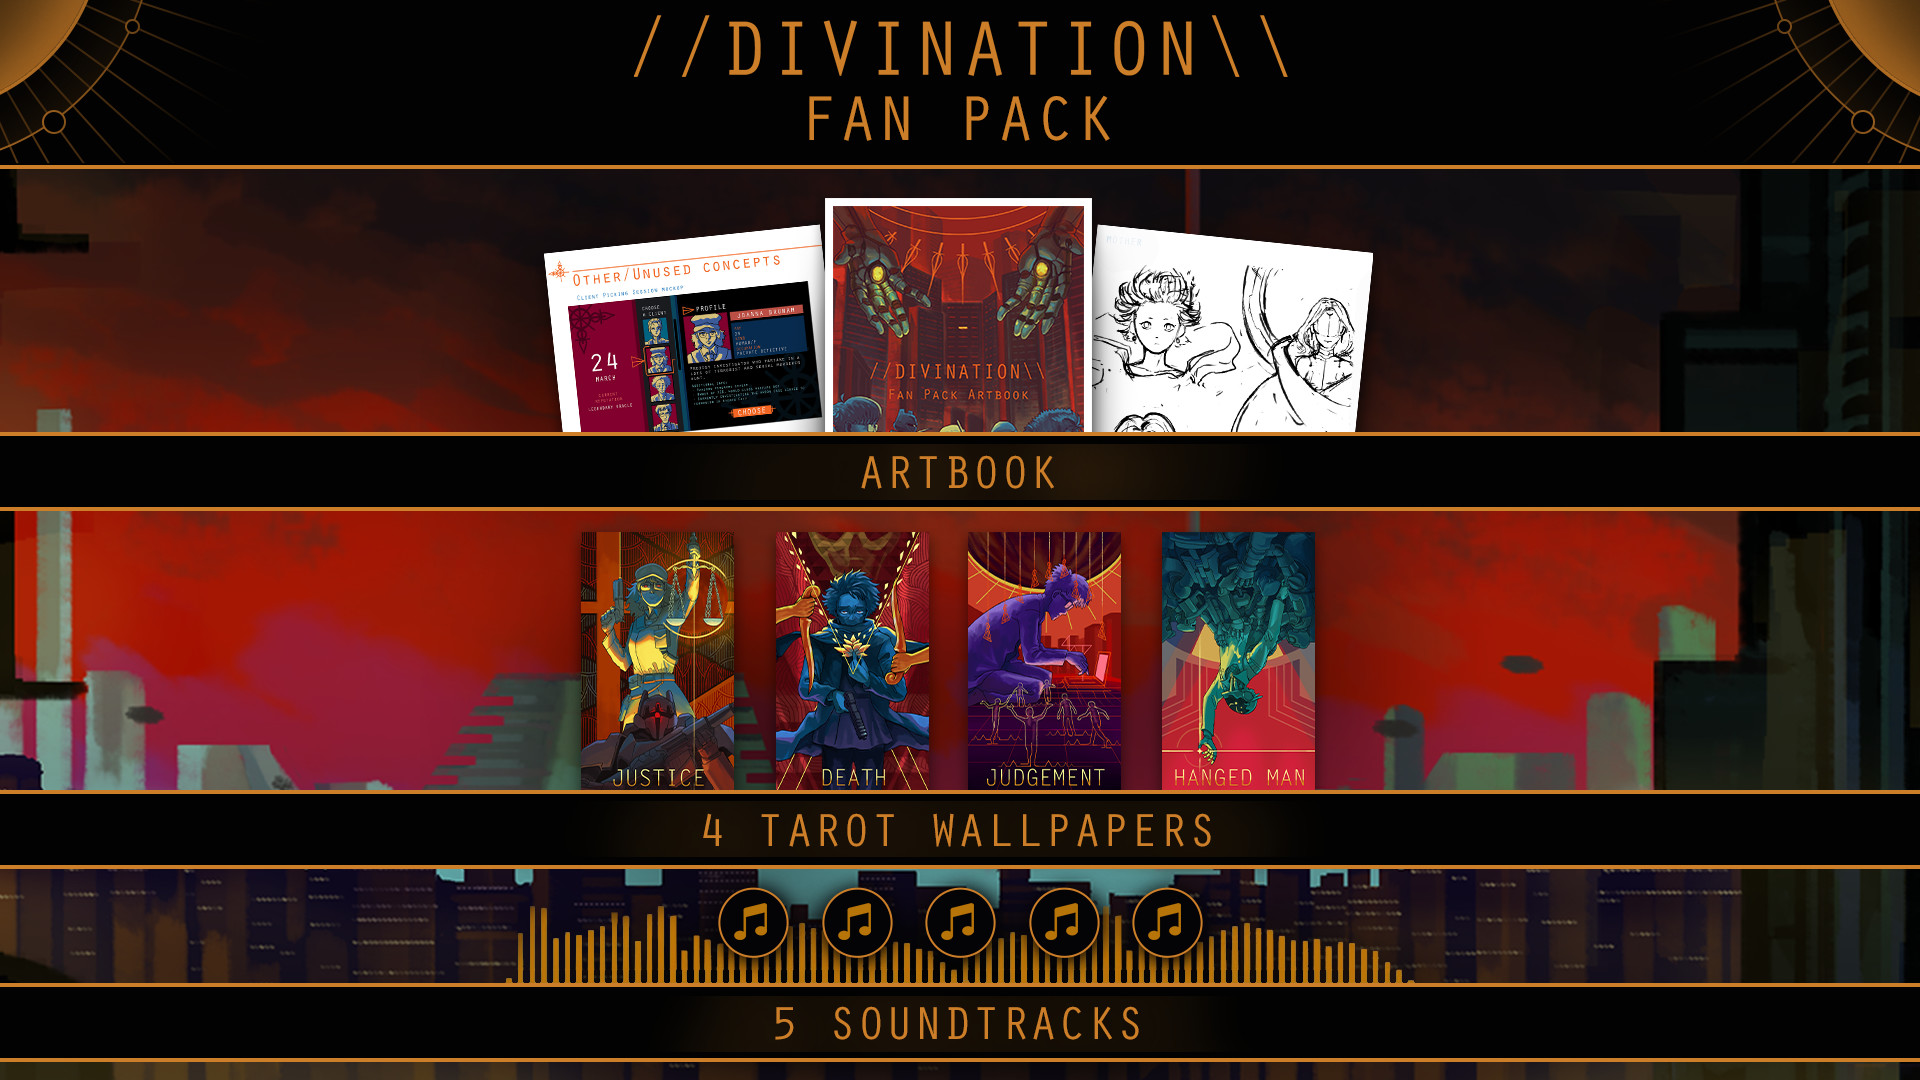 DIVINATION - Fan Pack (Art Book, Wallpaper, Soundtrack) Featured Screenshot #1